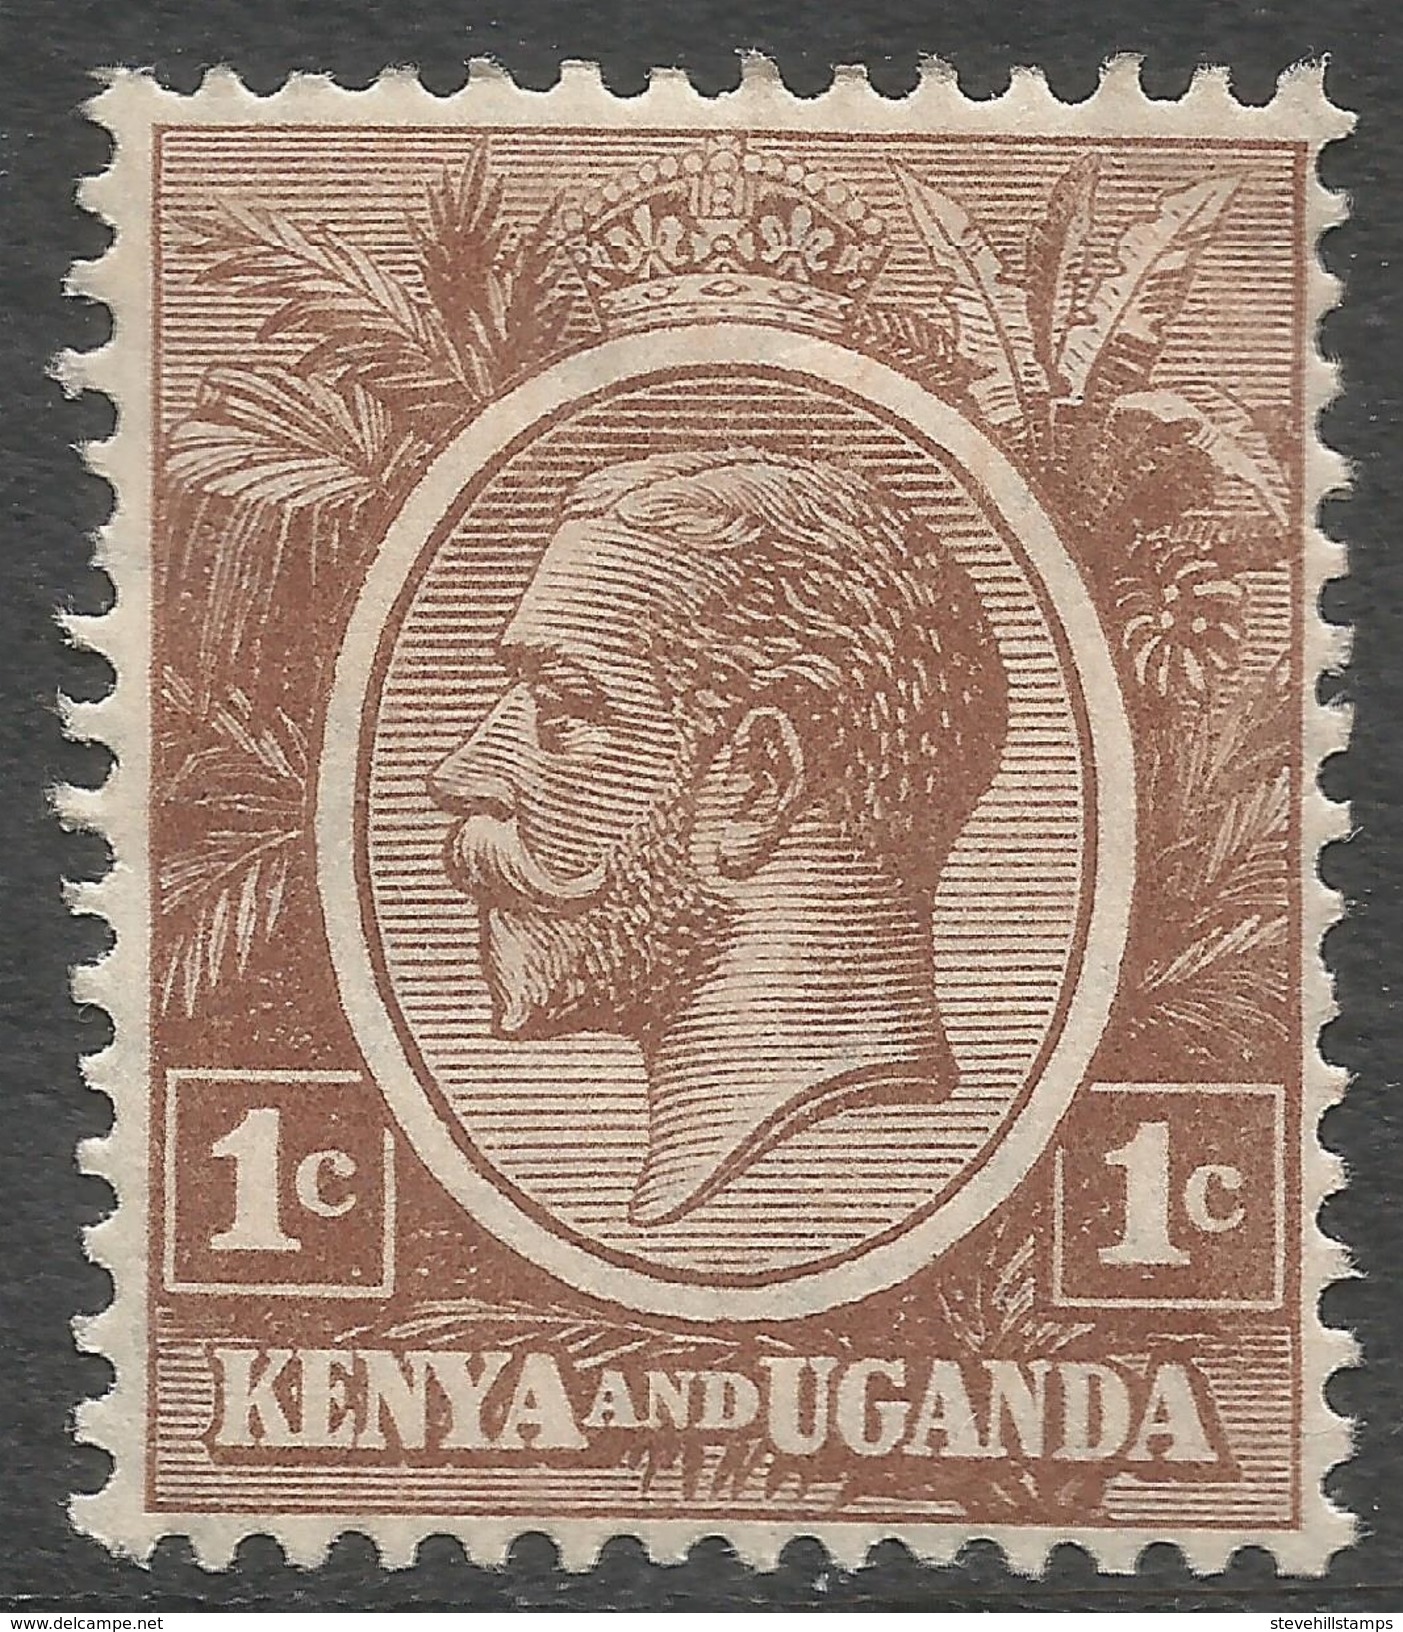 Kenya & Uganda. 1922-27 KGV. 1c MH. SG76 - Kenya & Ouganda